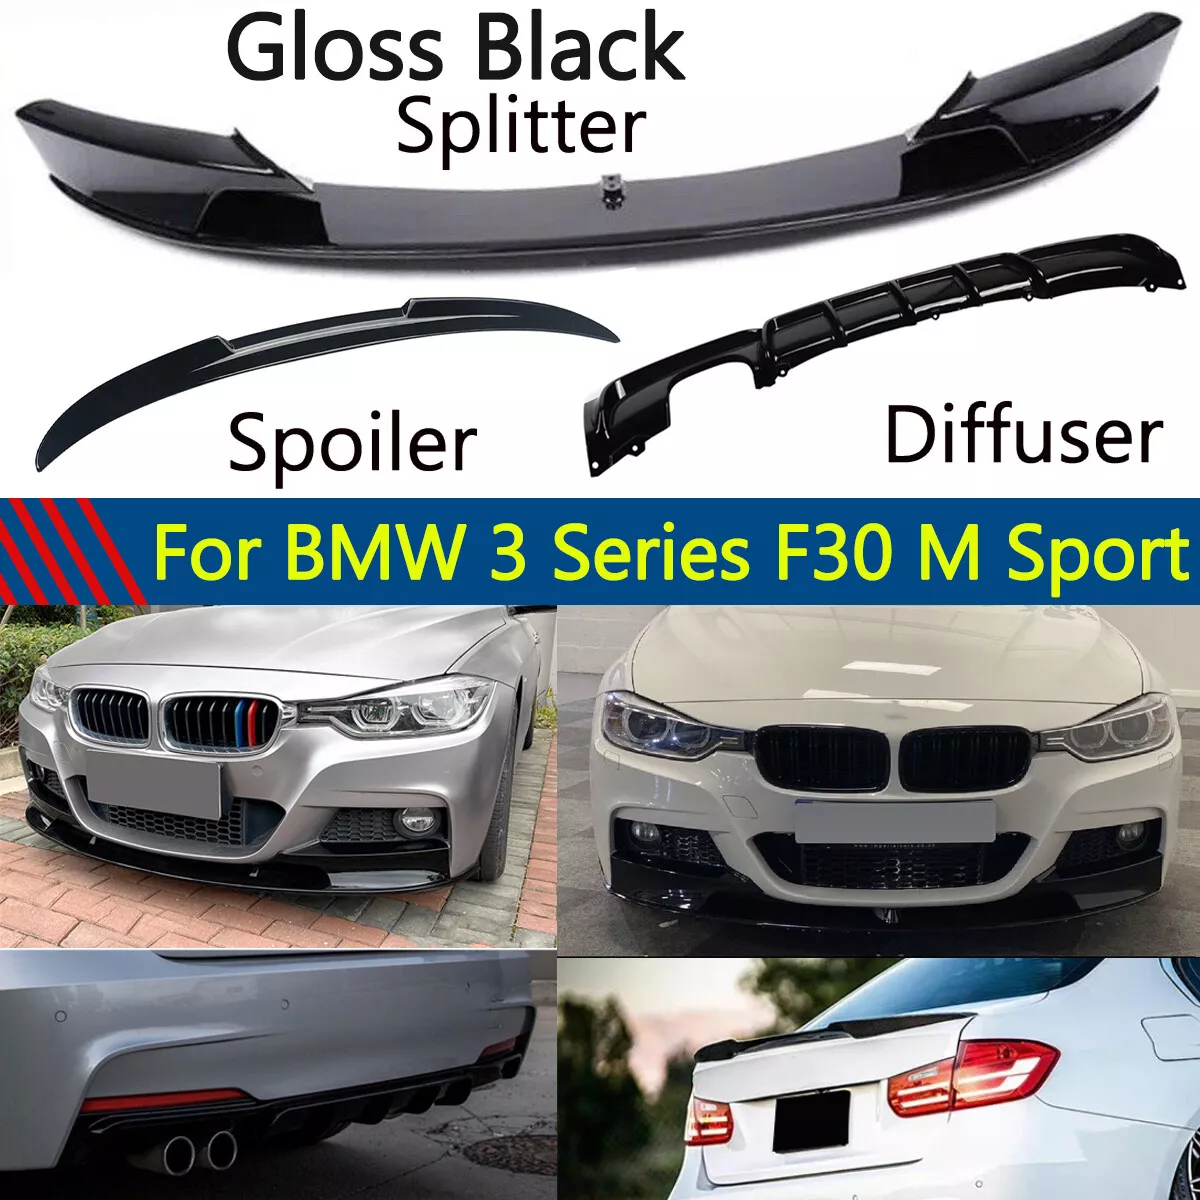 Gloss Black For BMW F30 M Sport 2012-18 Front Splitter Lip Rear Diffuser  Spoiler